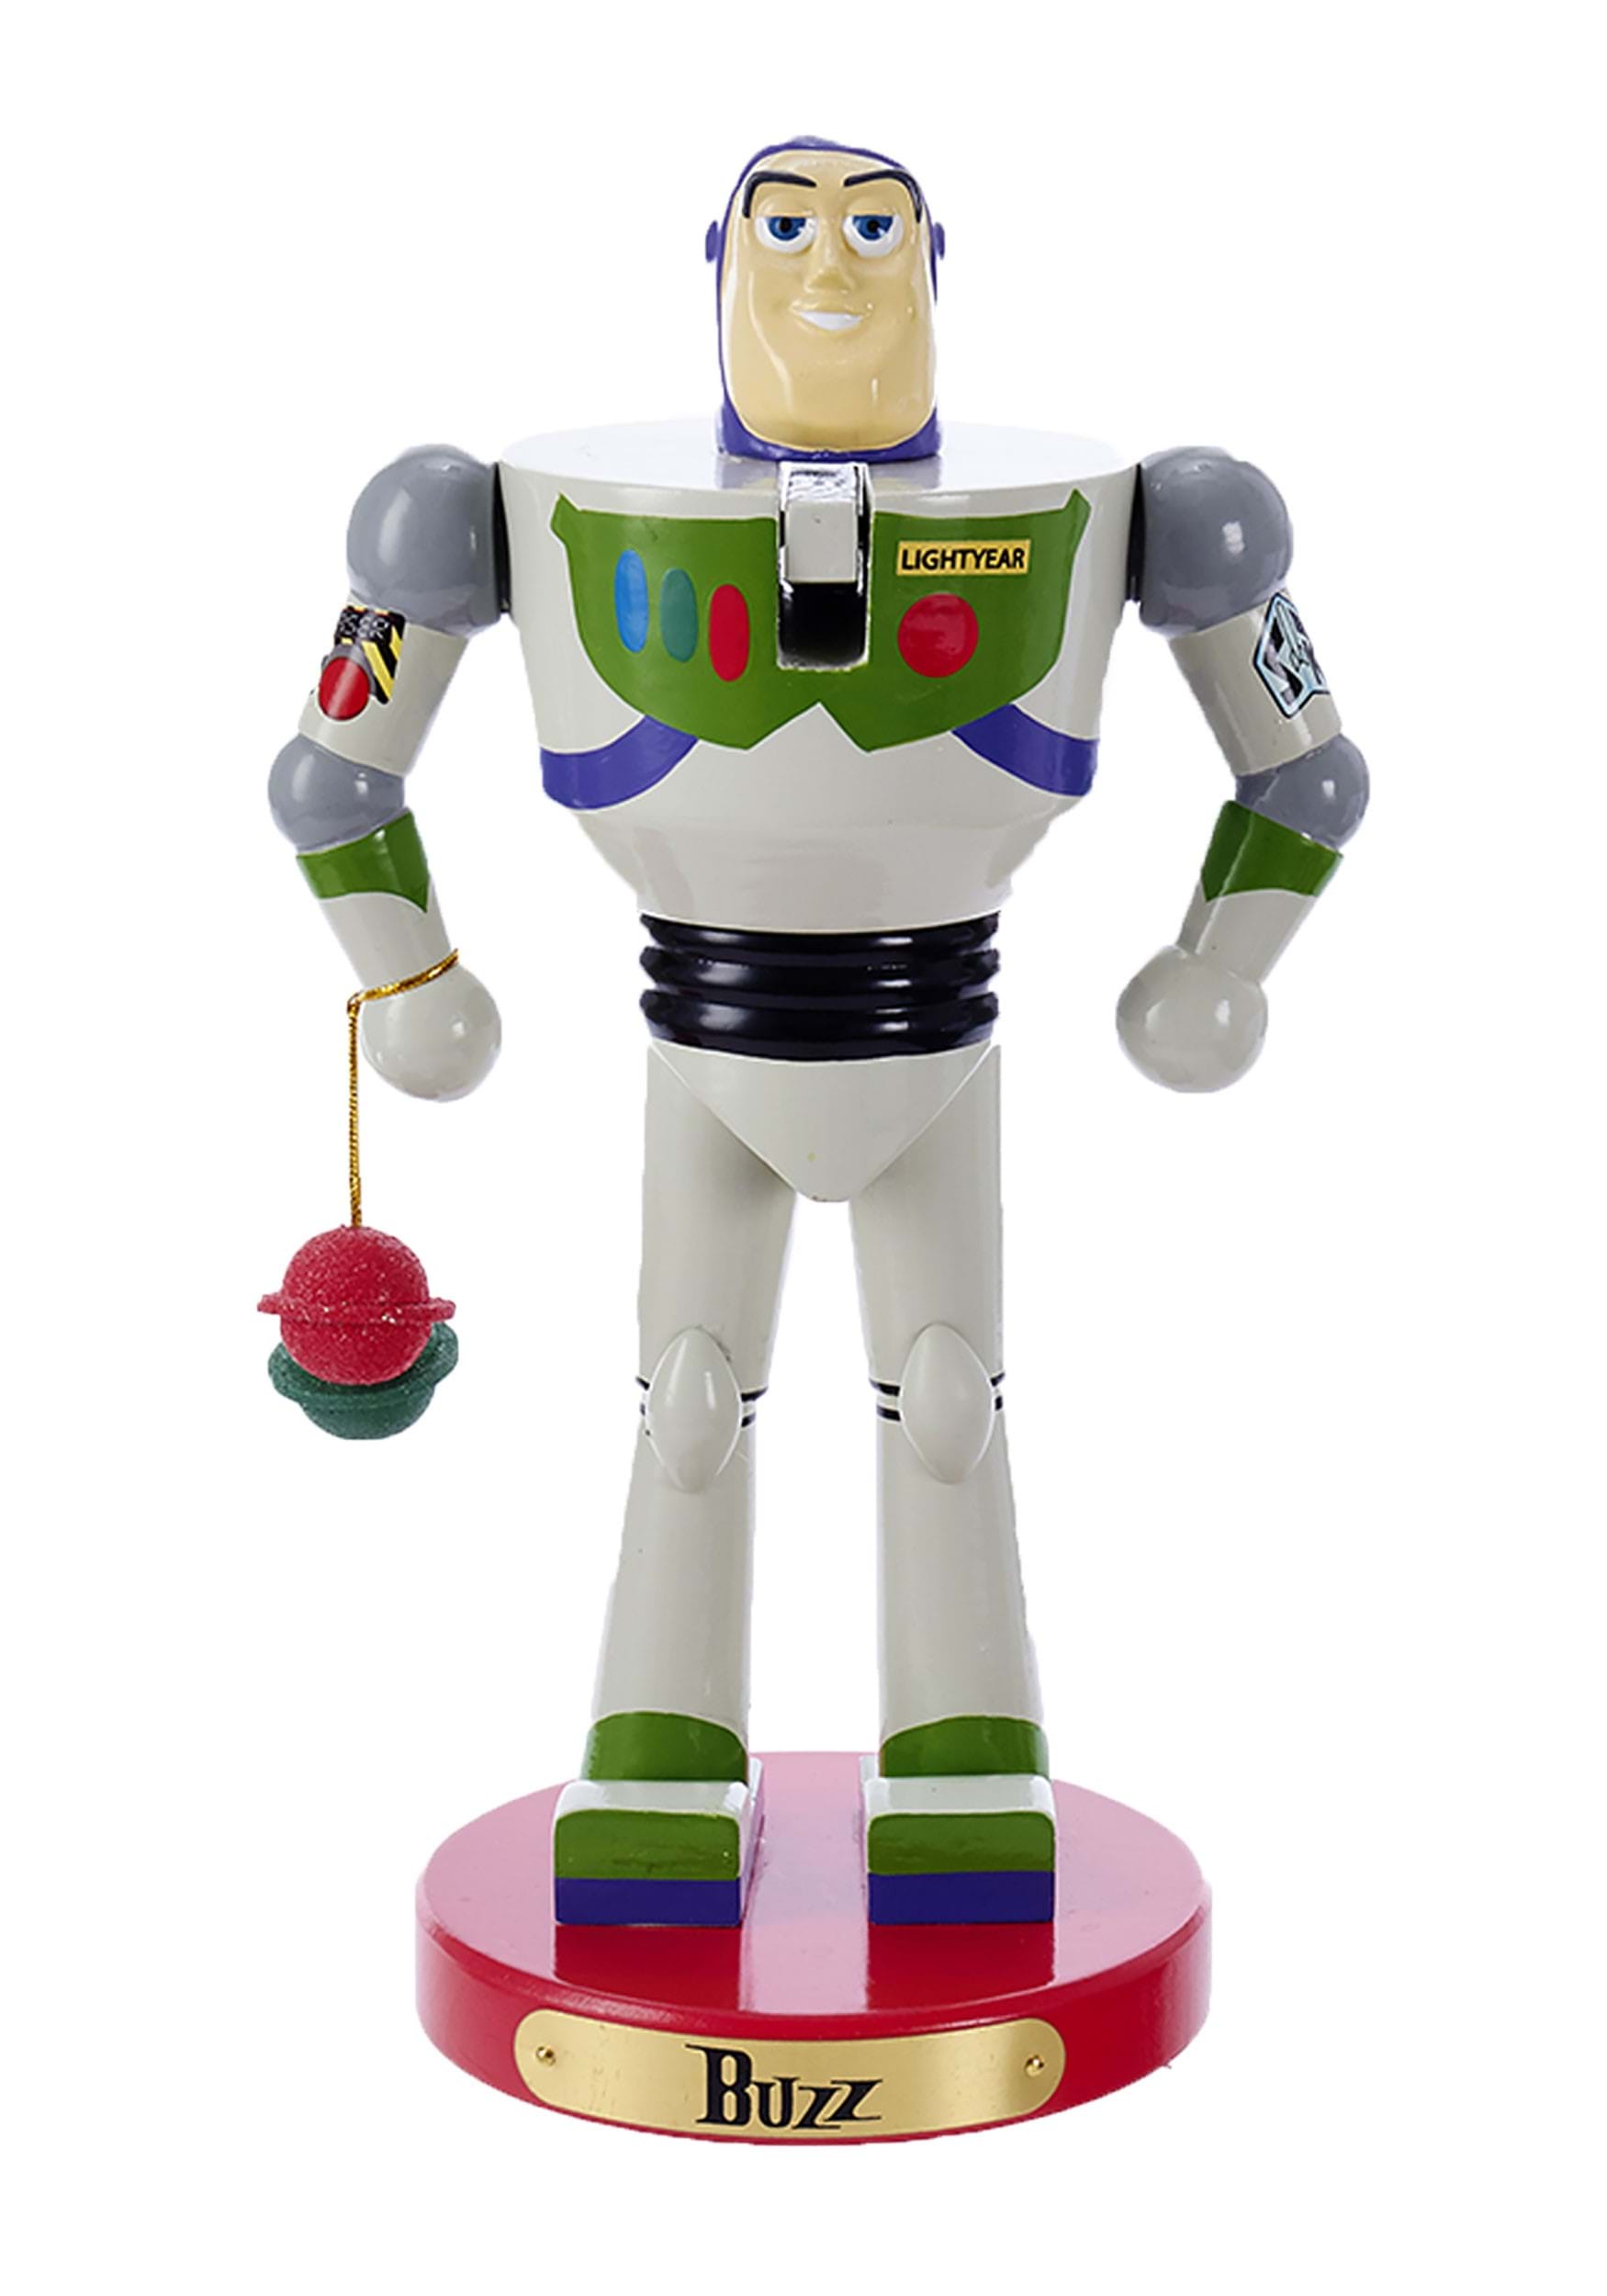 11" Buzz Lightyear Nutcracker from Toy Story